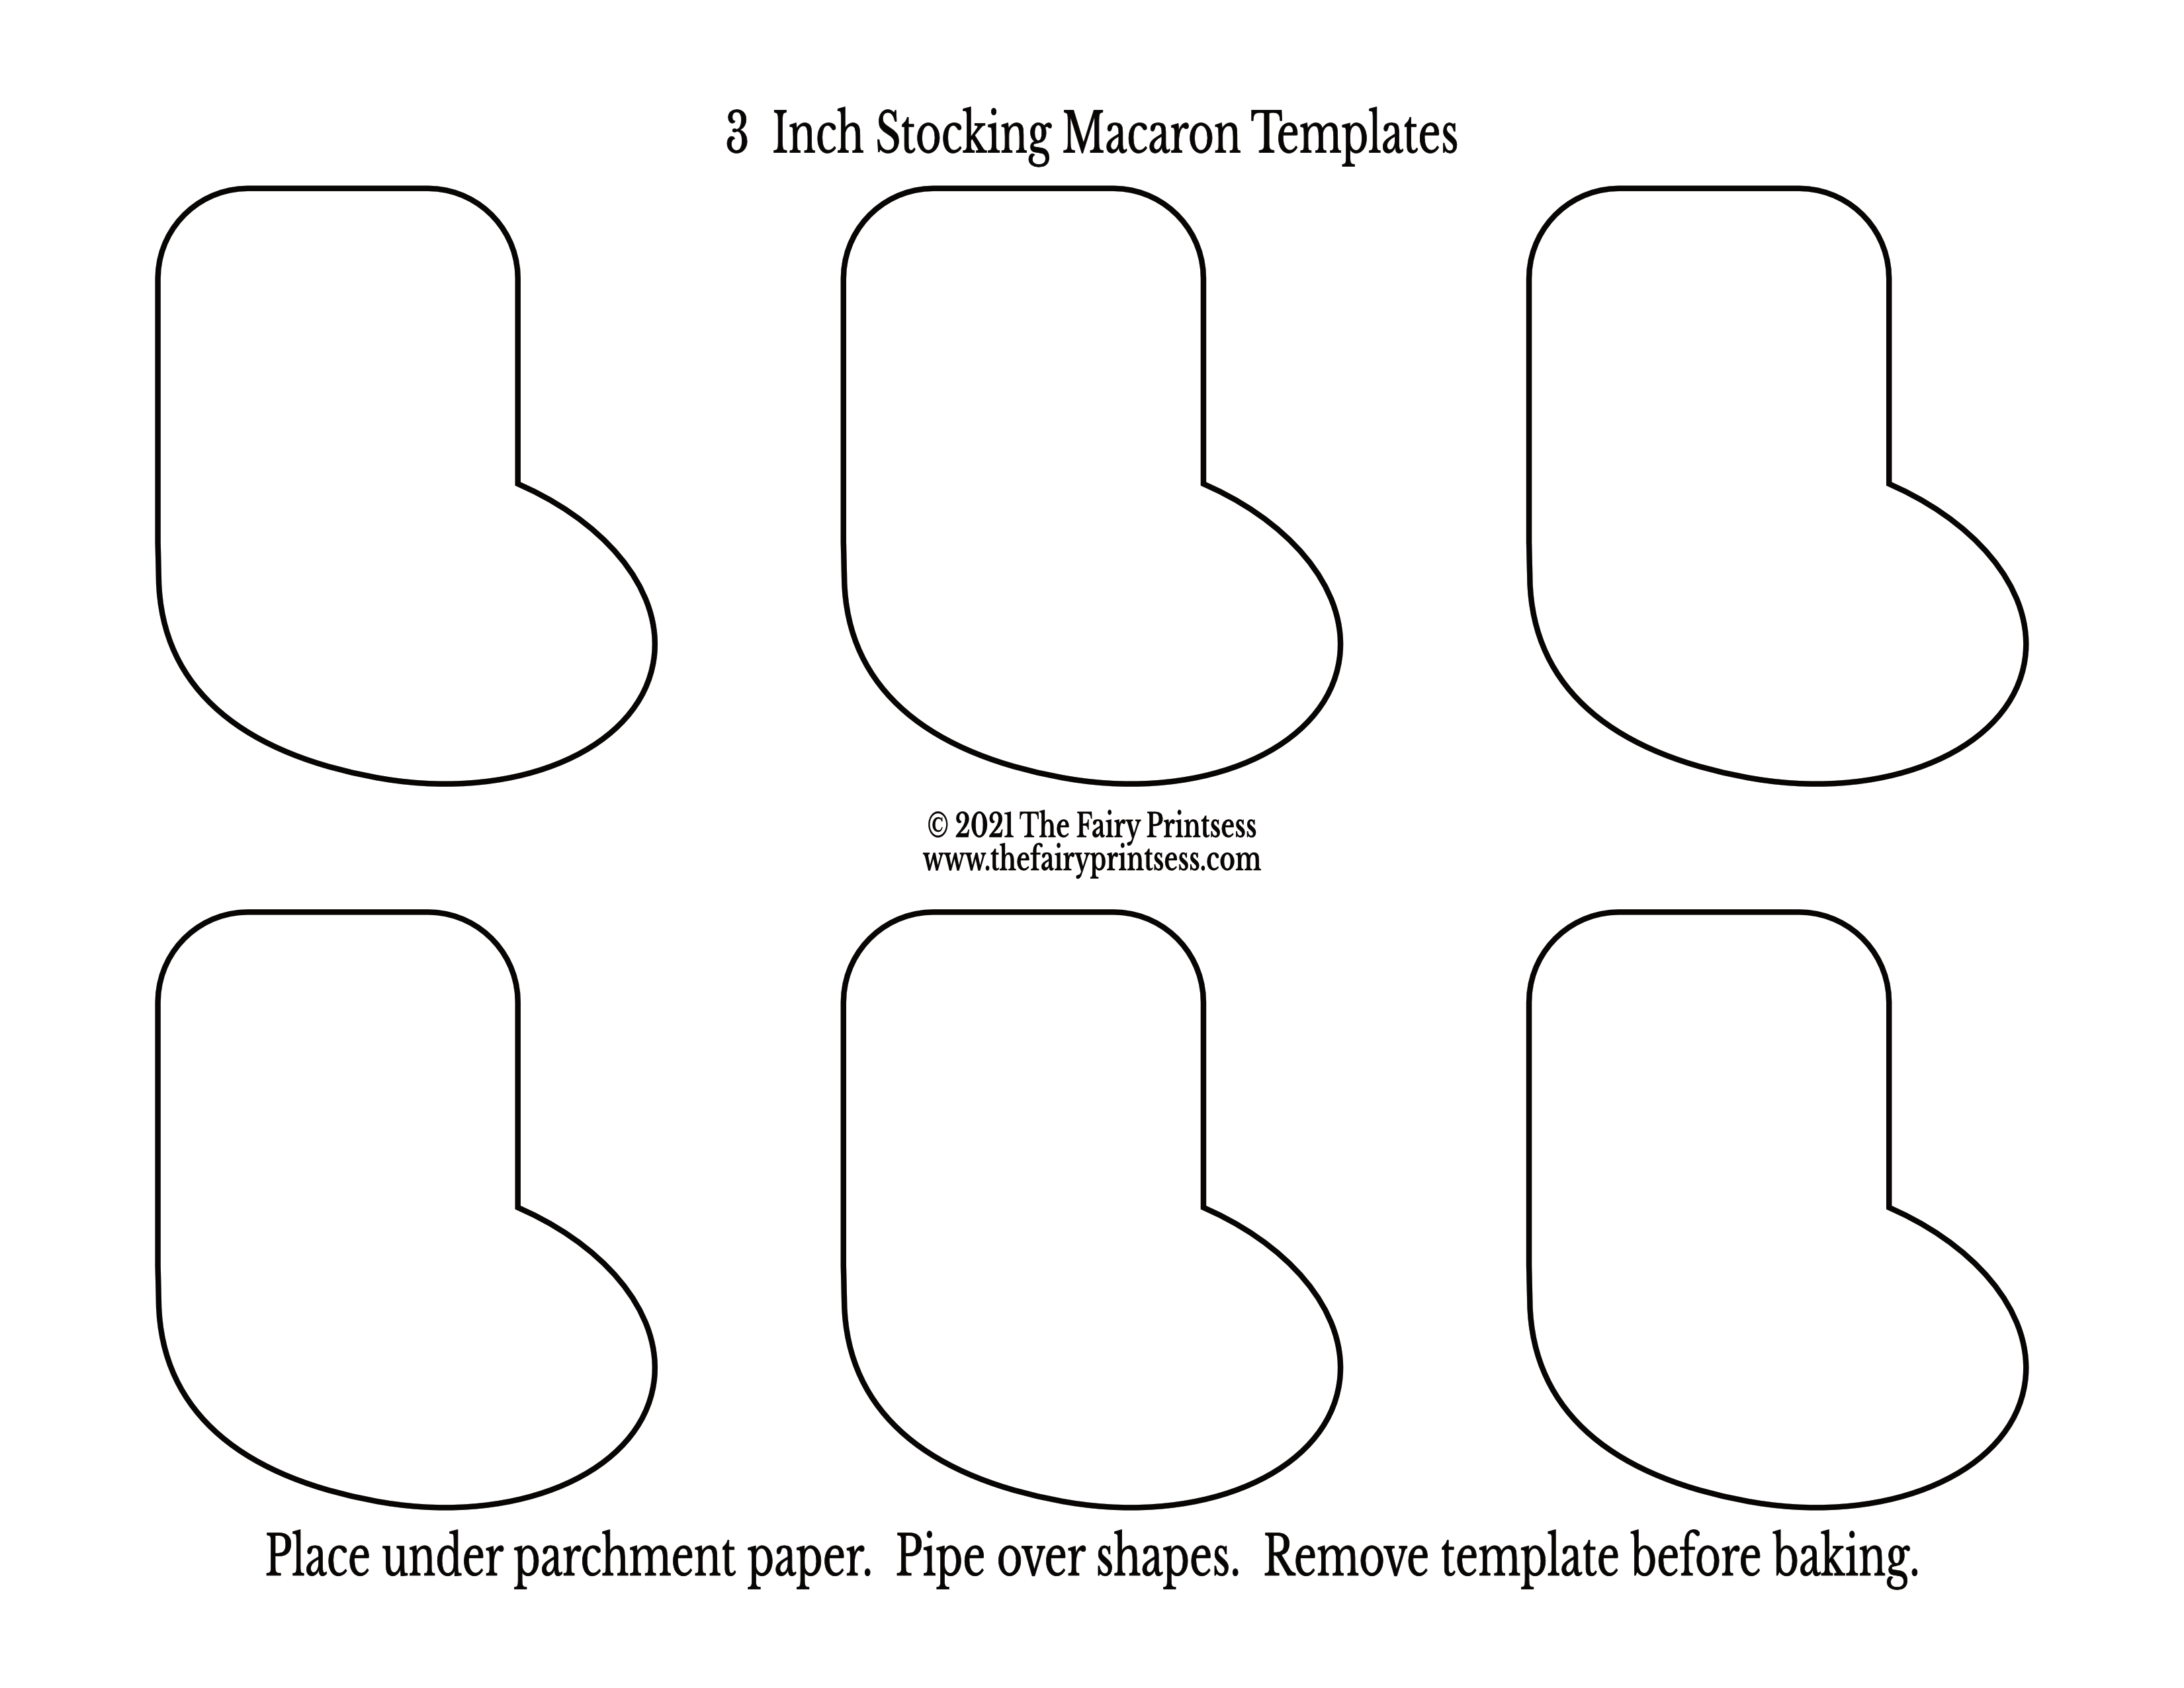 3 inch Christmas stocking macaron template free printable